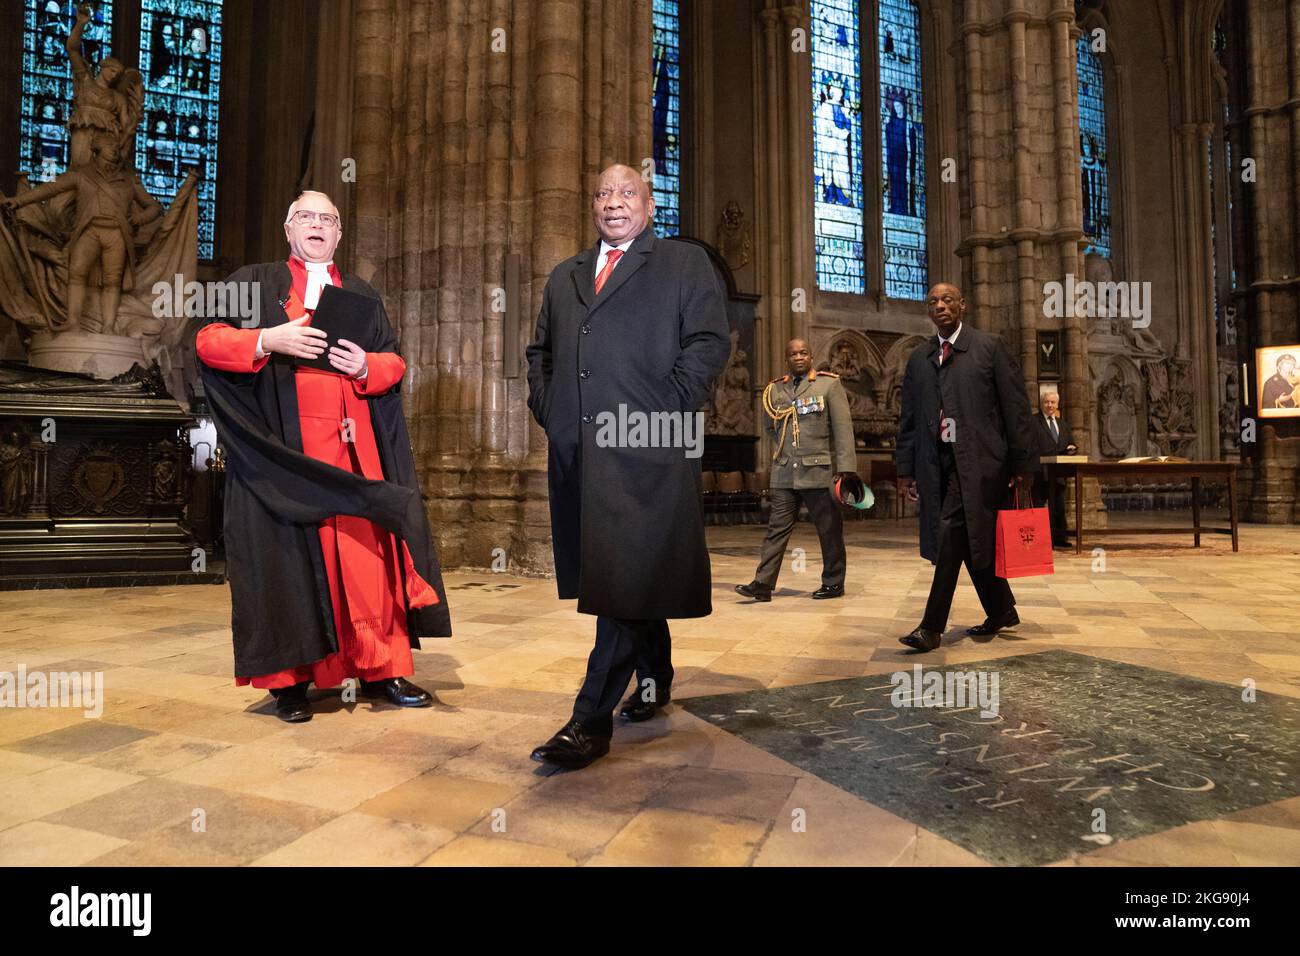 Le président Cyril Ramaphosa, d'Afrique du Sud, visite l'abbaye de Westminster à Londres, accompagné du doyen de l'abbaye de Westminster, le très révérend David Hoyle, dans le cadre de la visite d'État au Royaume-Uni par le président sud-africain. Date de la photo: Mardi 22 novembre 2022. Banque D'Images